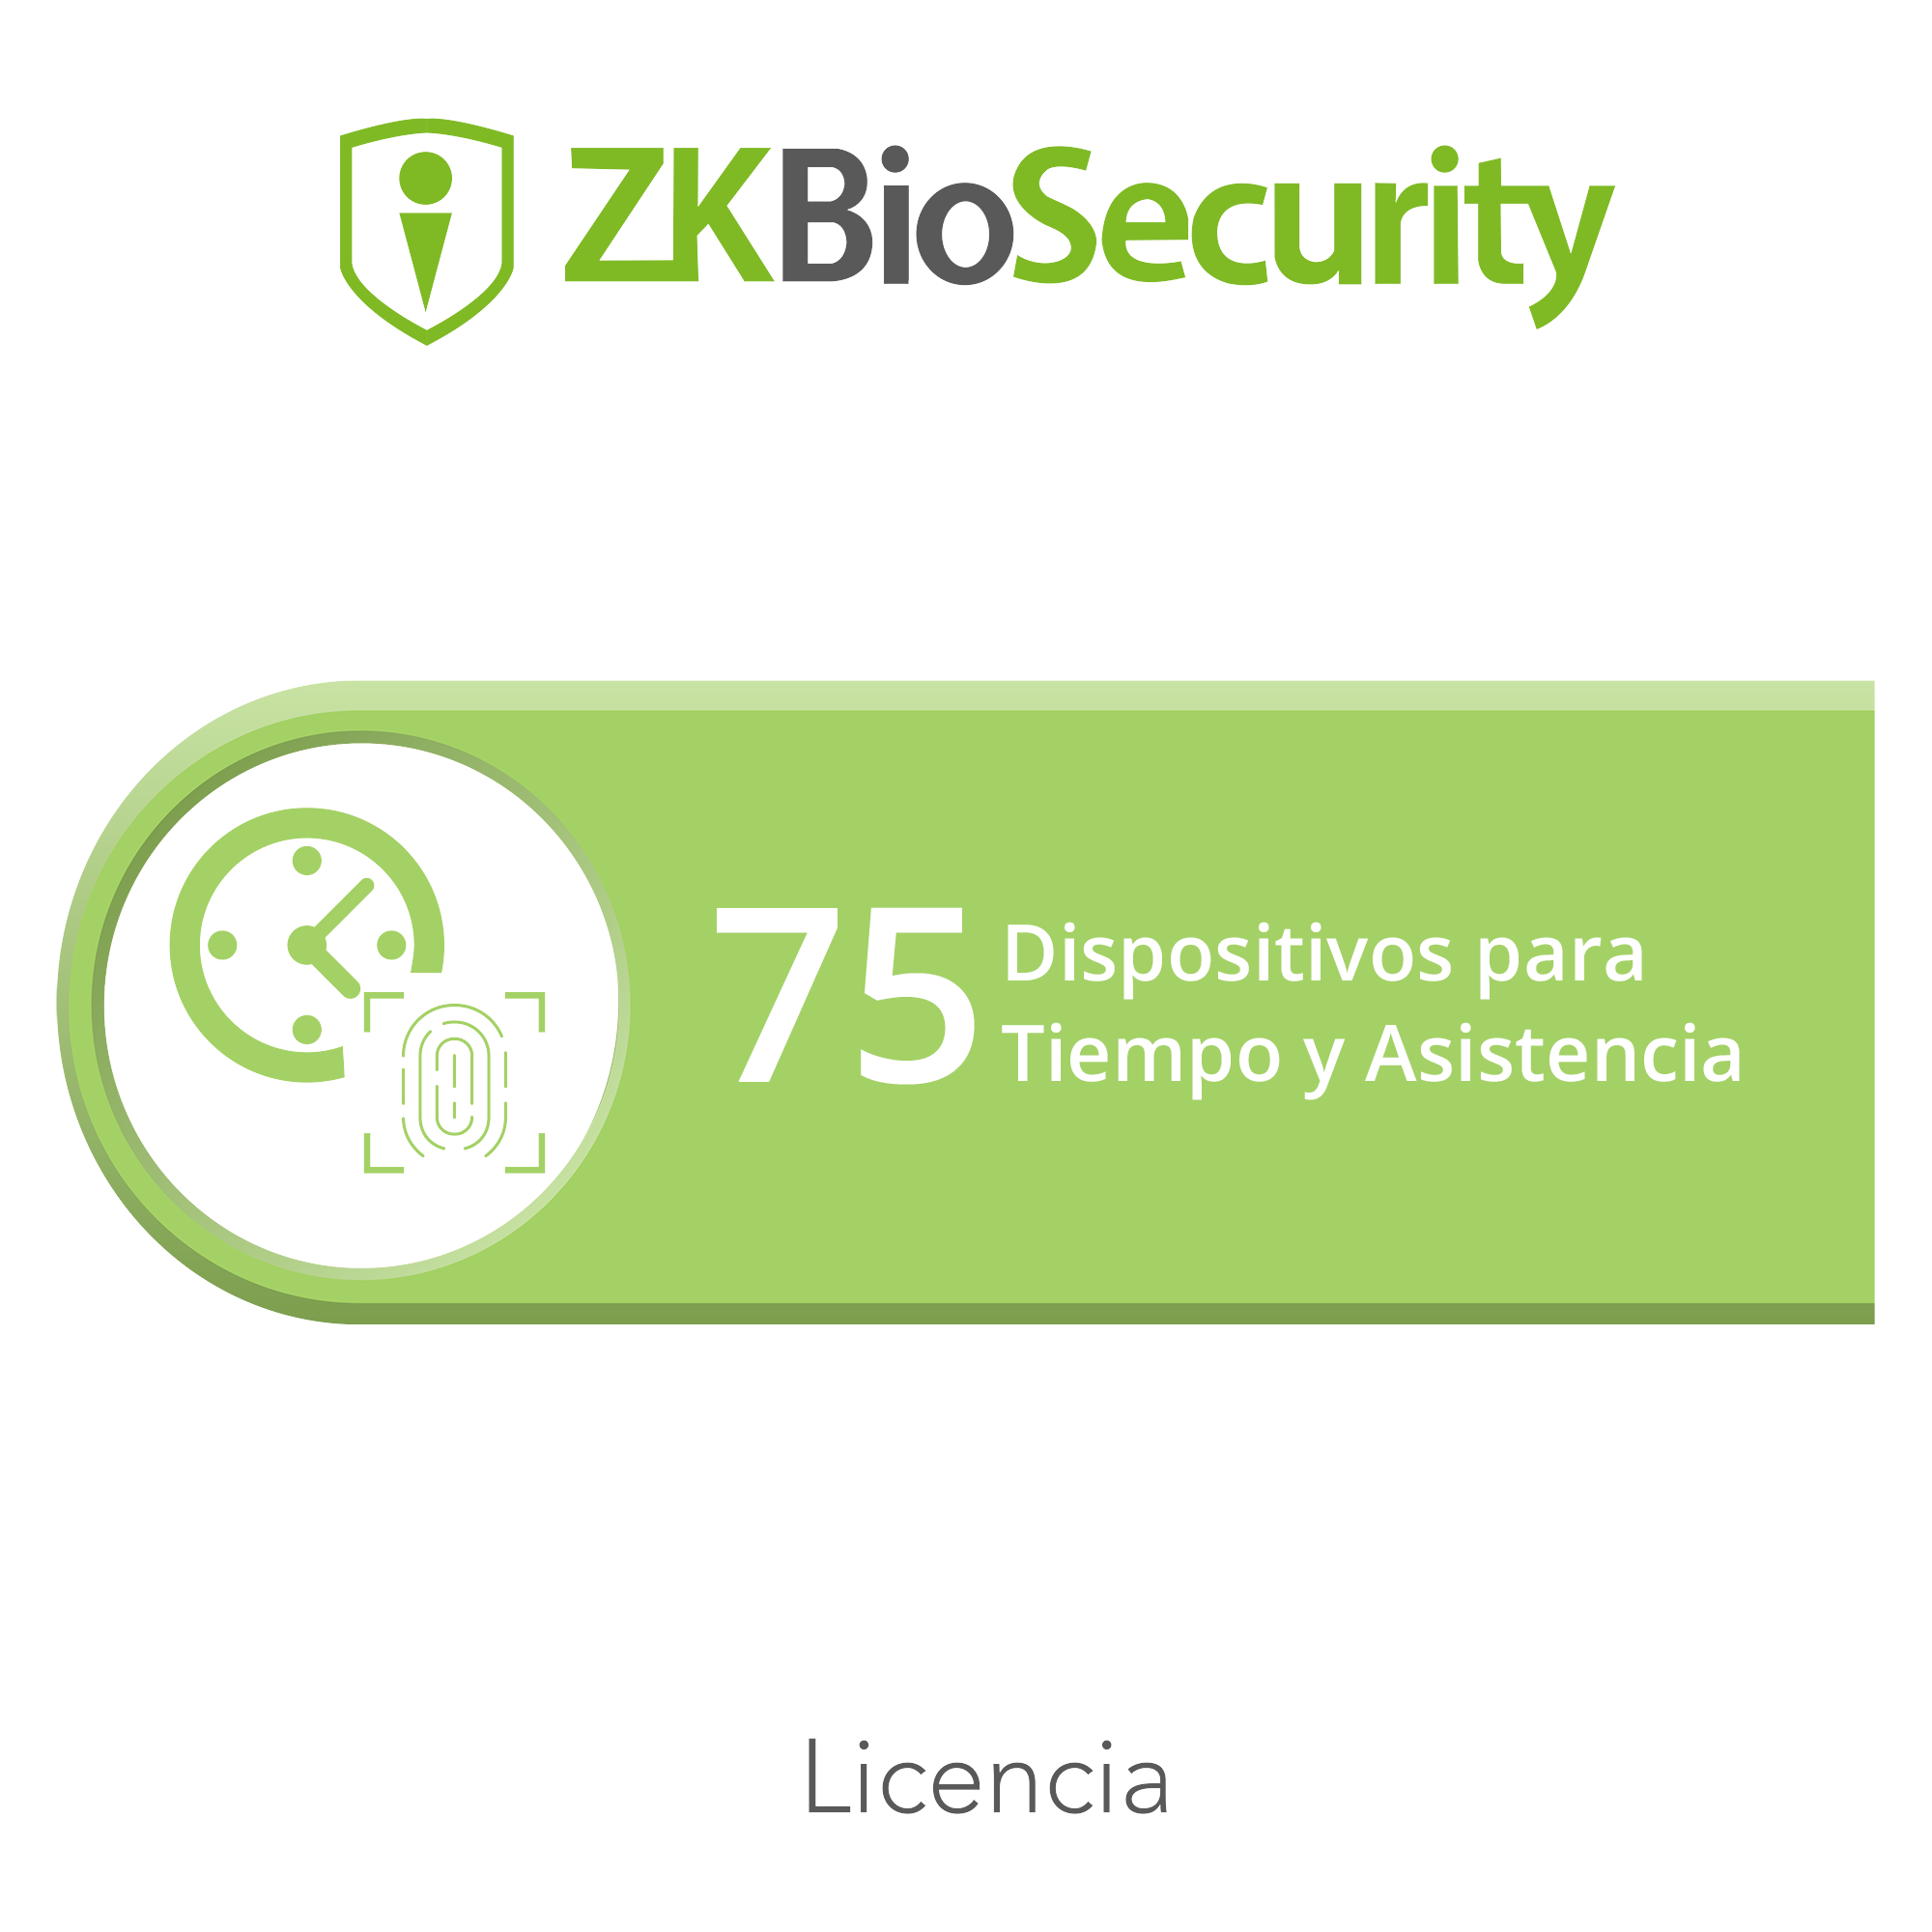 Licencia para ZKBiosecurity permite gestionar hasta 75 dispositivos para tiempo y asistencia